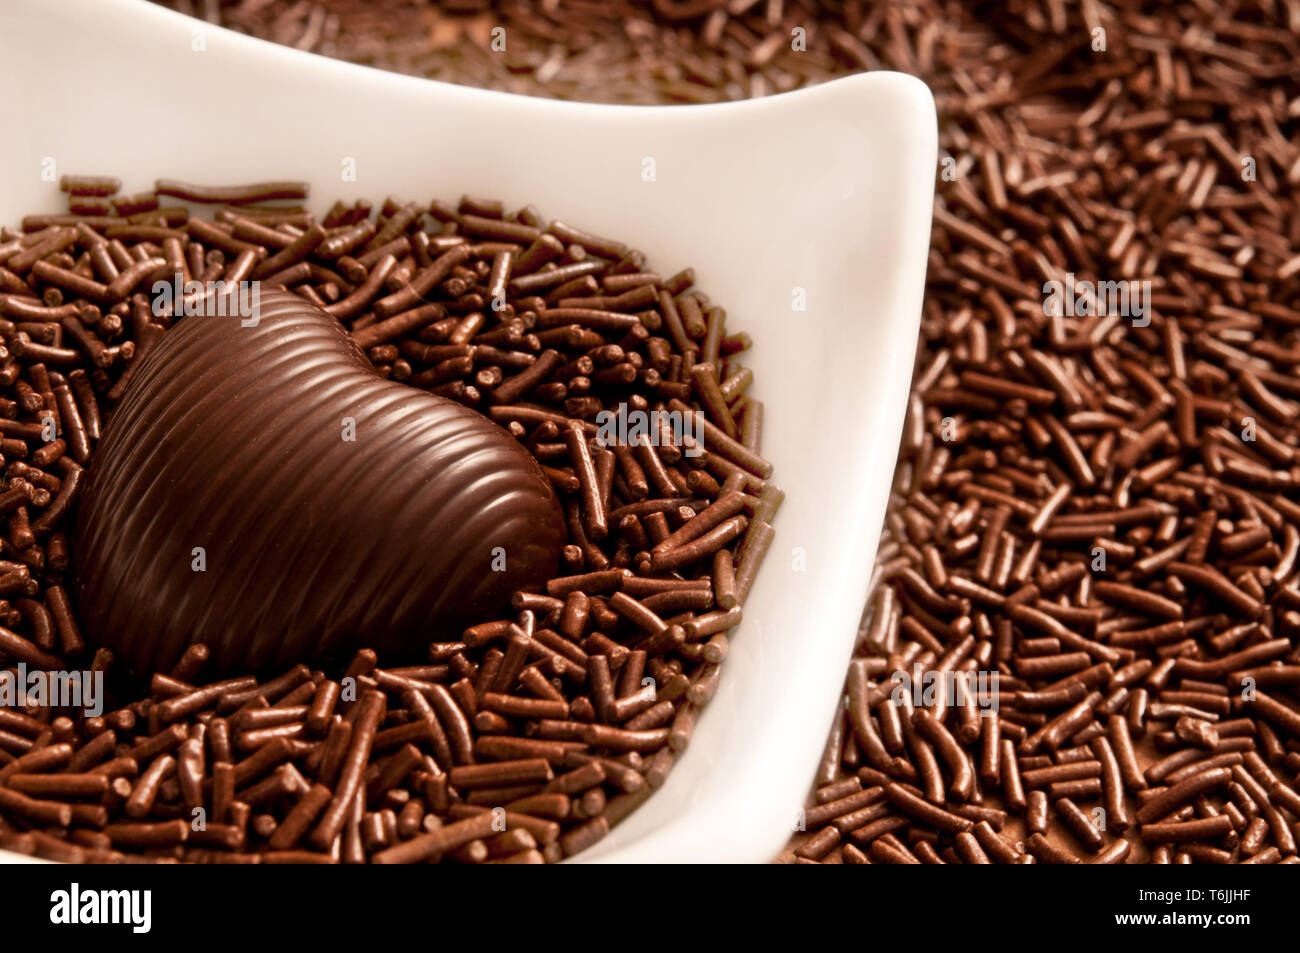 Schokolade in Herzform Bonbon auf einem Bett von Schokolade besprüht Stockfoto